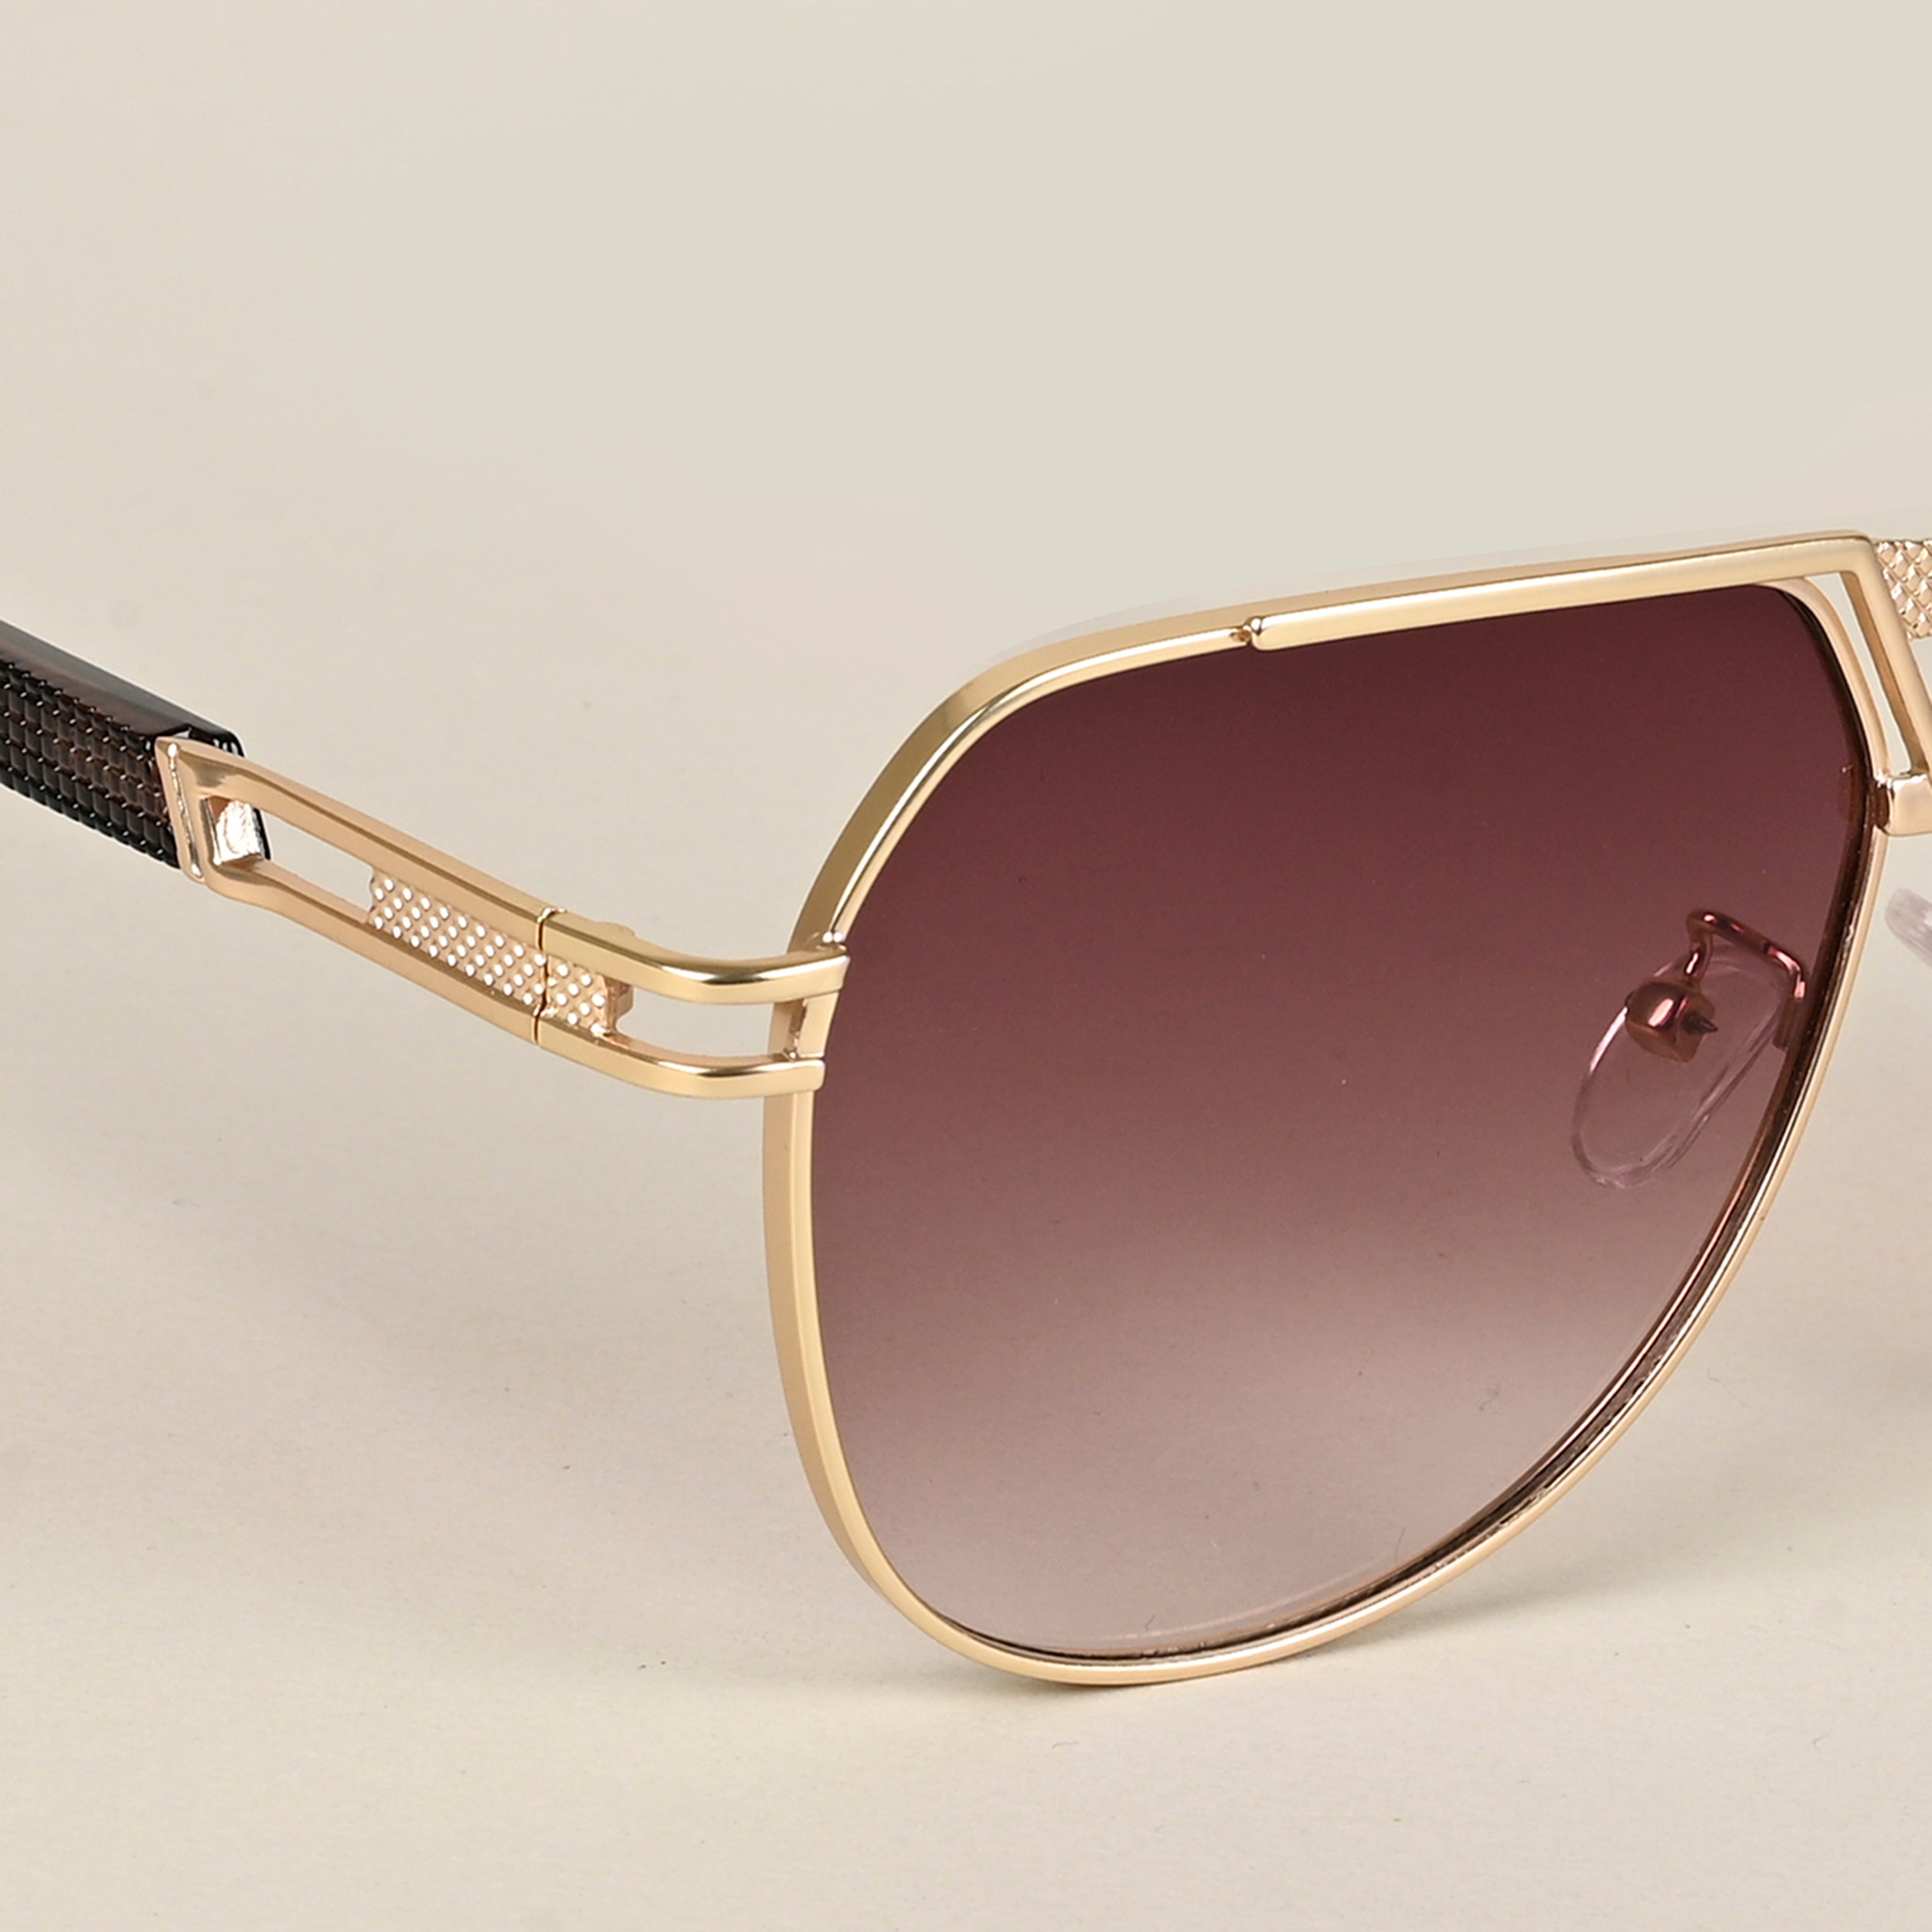 Voyage Aviator Sunglasses for Men & Women (Brown & Clear Lens | Golden Frame  - MG5204)